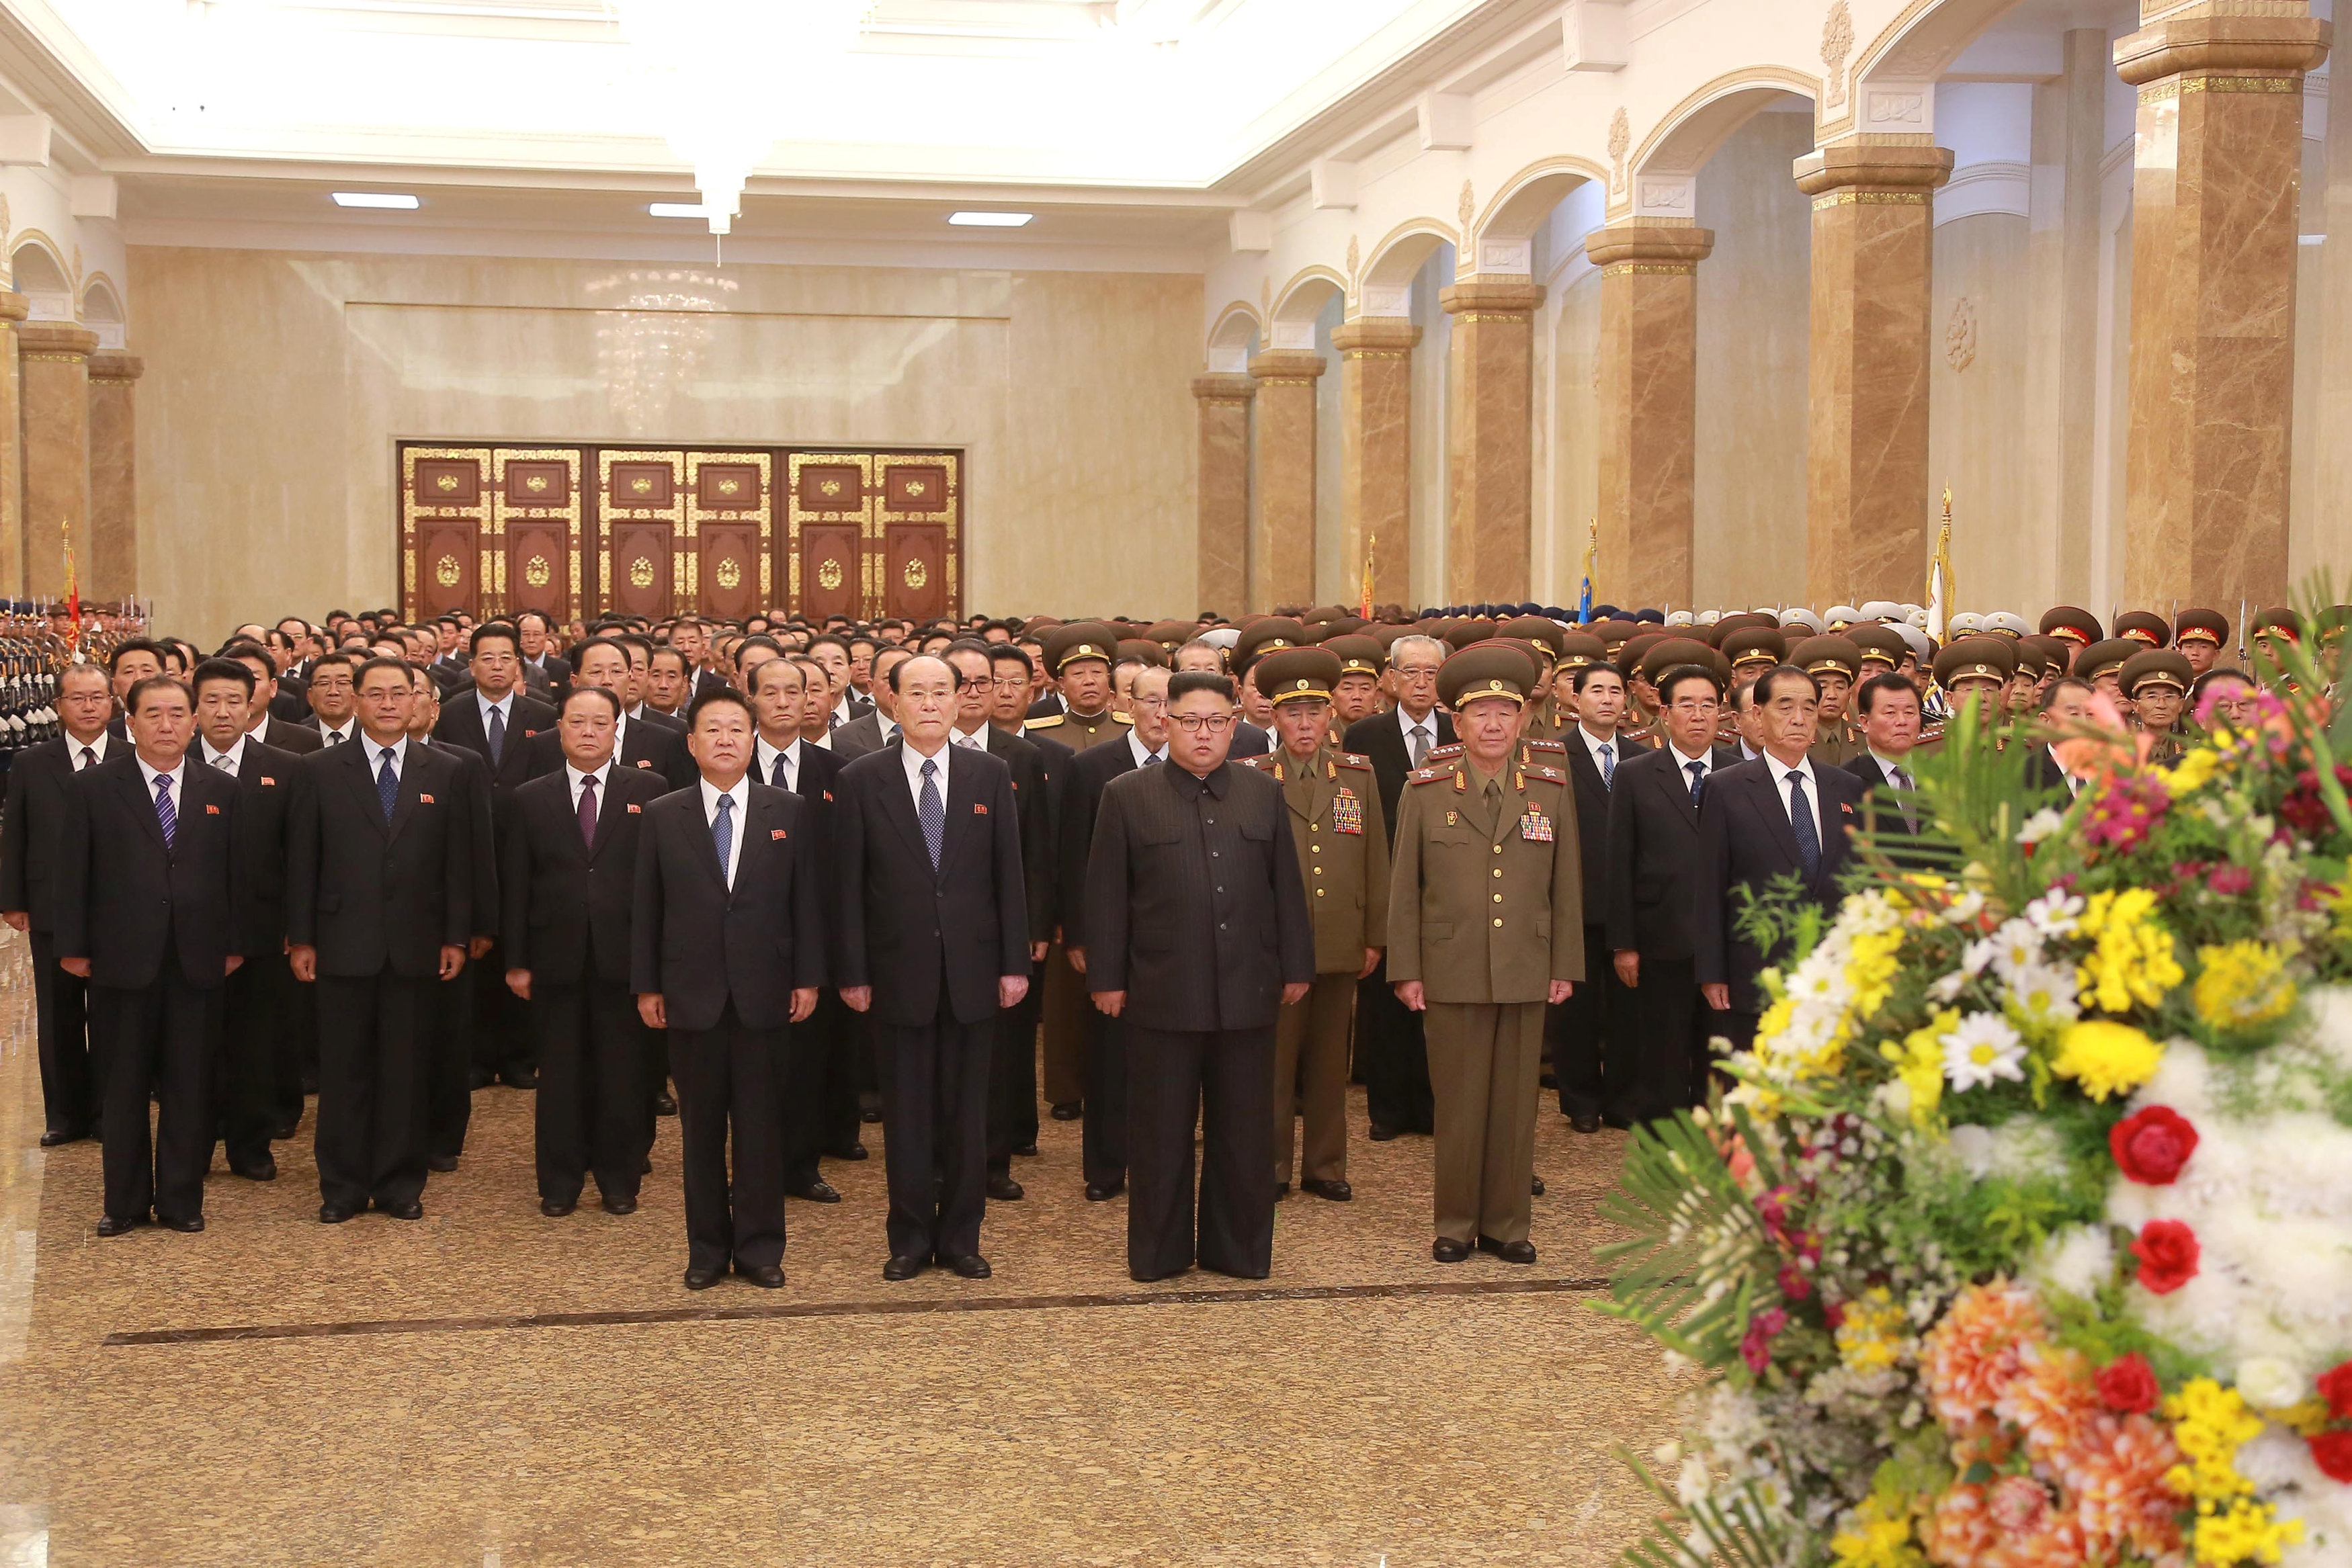 اجتماع زعيم كوريا الشمالية بالقادة السياسين والعسكرين